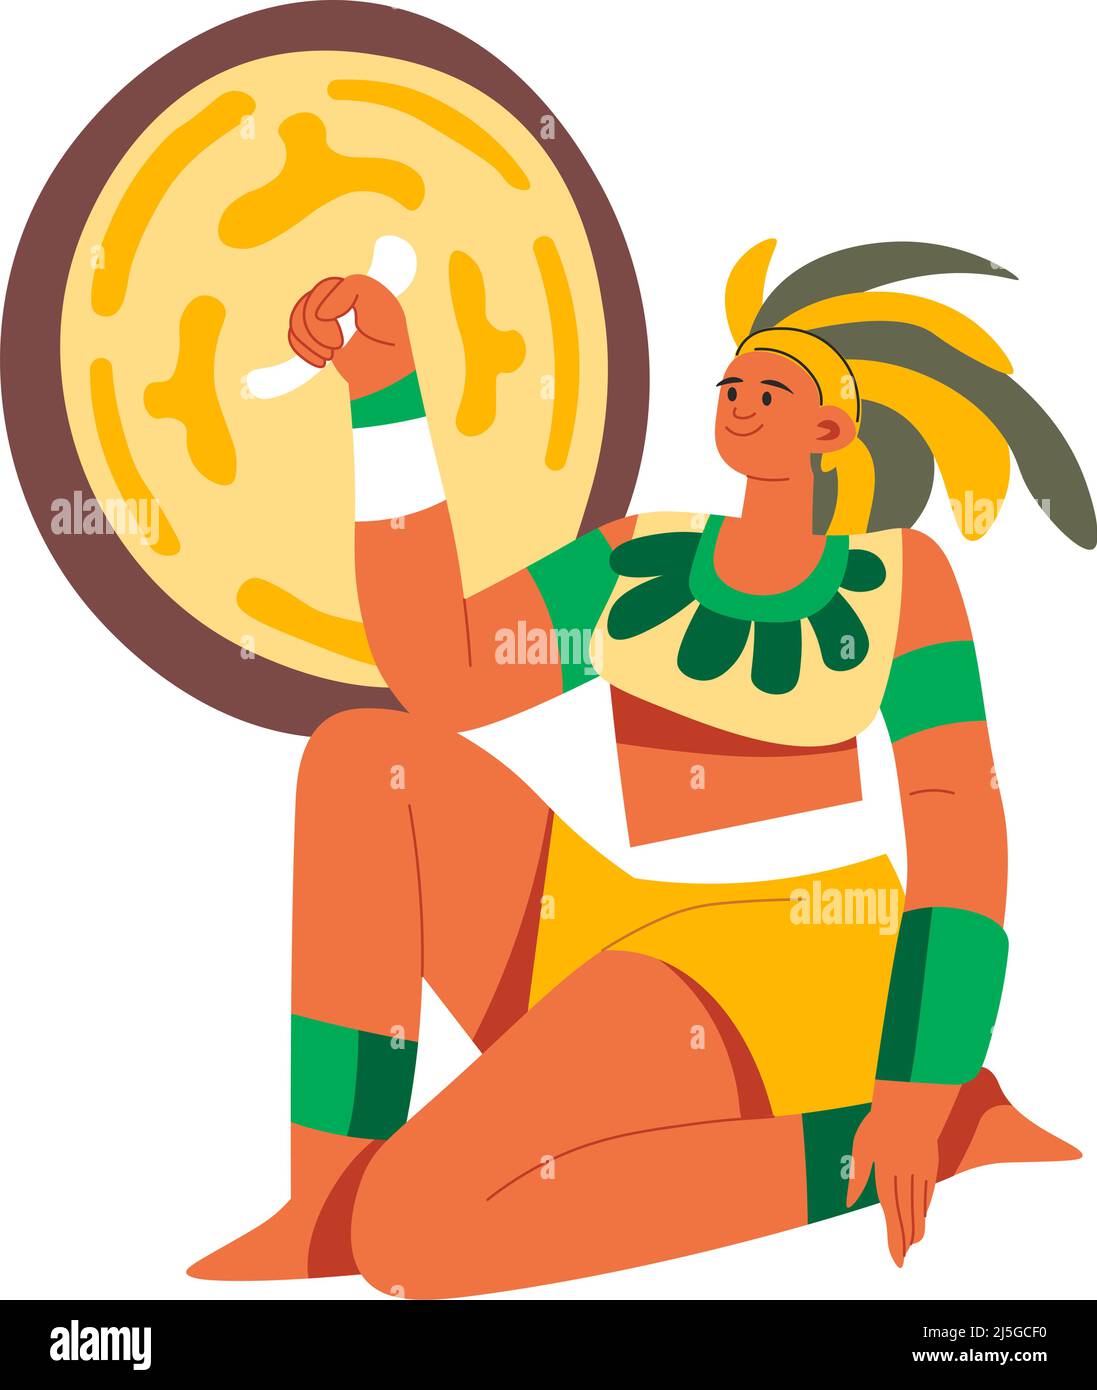 Azteken- oder maya-Kaiser oder -König, Herrscher der alten Zivilisation. Männlicher Charakter, der im Kampf oder im Kampf mit einem Schild schützt. Mann mit Kopfbedeckung verrückt Stock Vektor